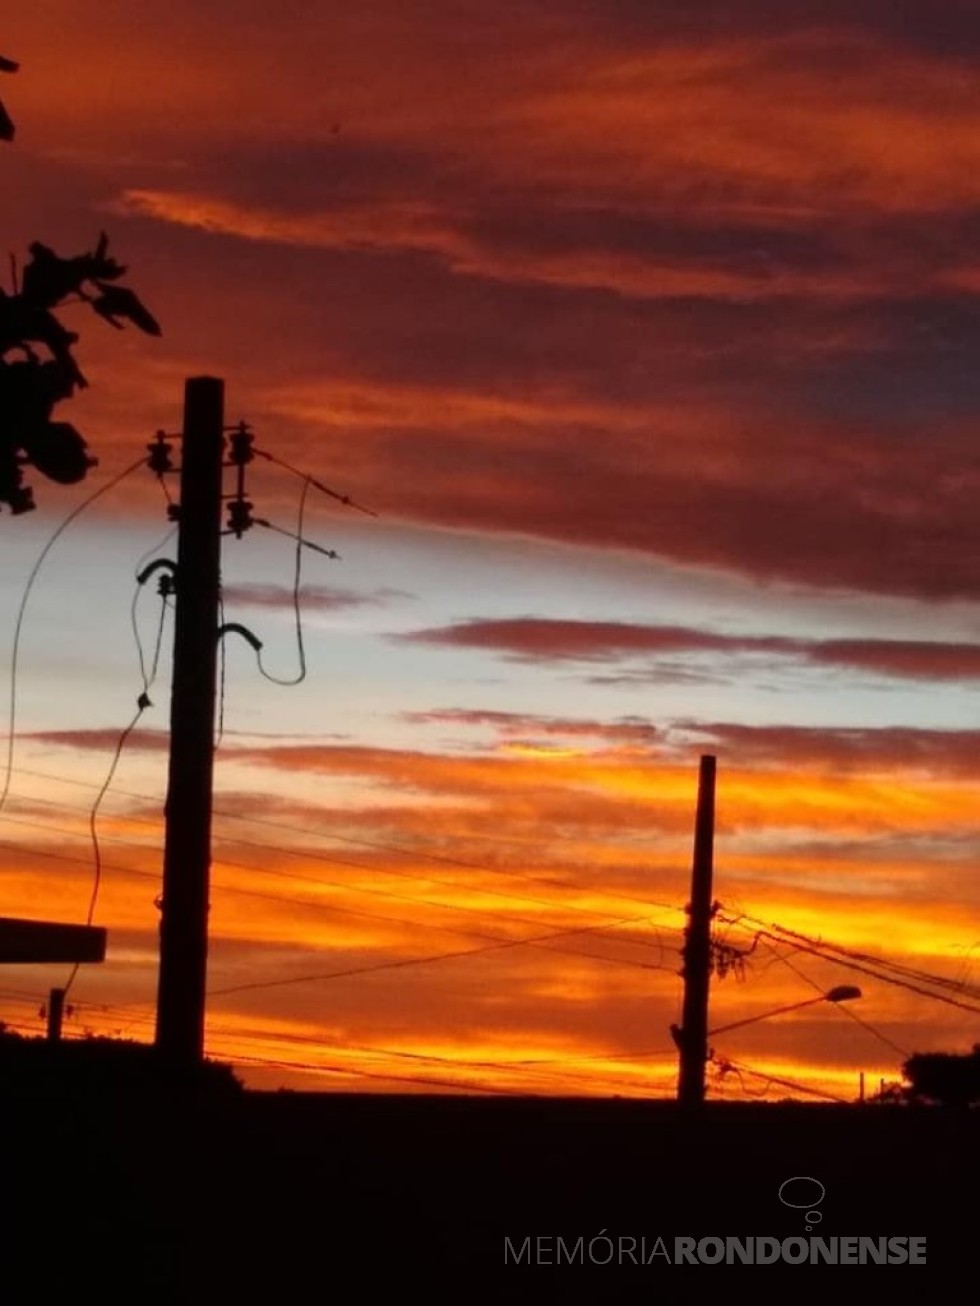 || Pôr do sol na cidade de Marechal Cândido Rondon, em 03 de fevereiro de 2021.
Imagem: Acervo e crédito de Ilda Bet - FOTO 13 - 
